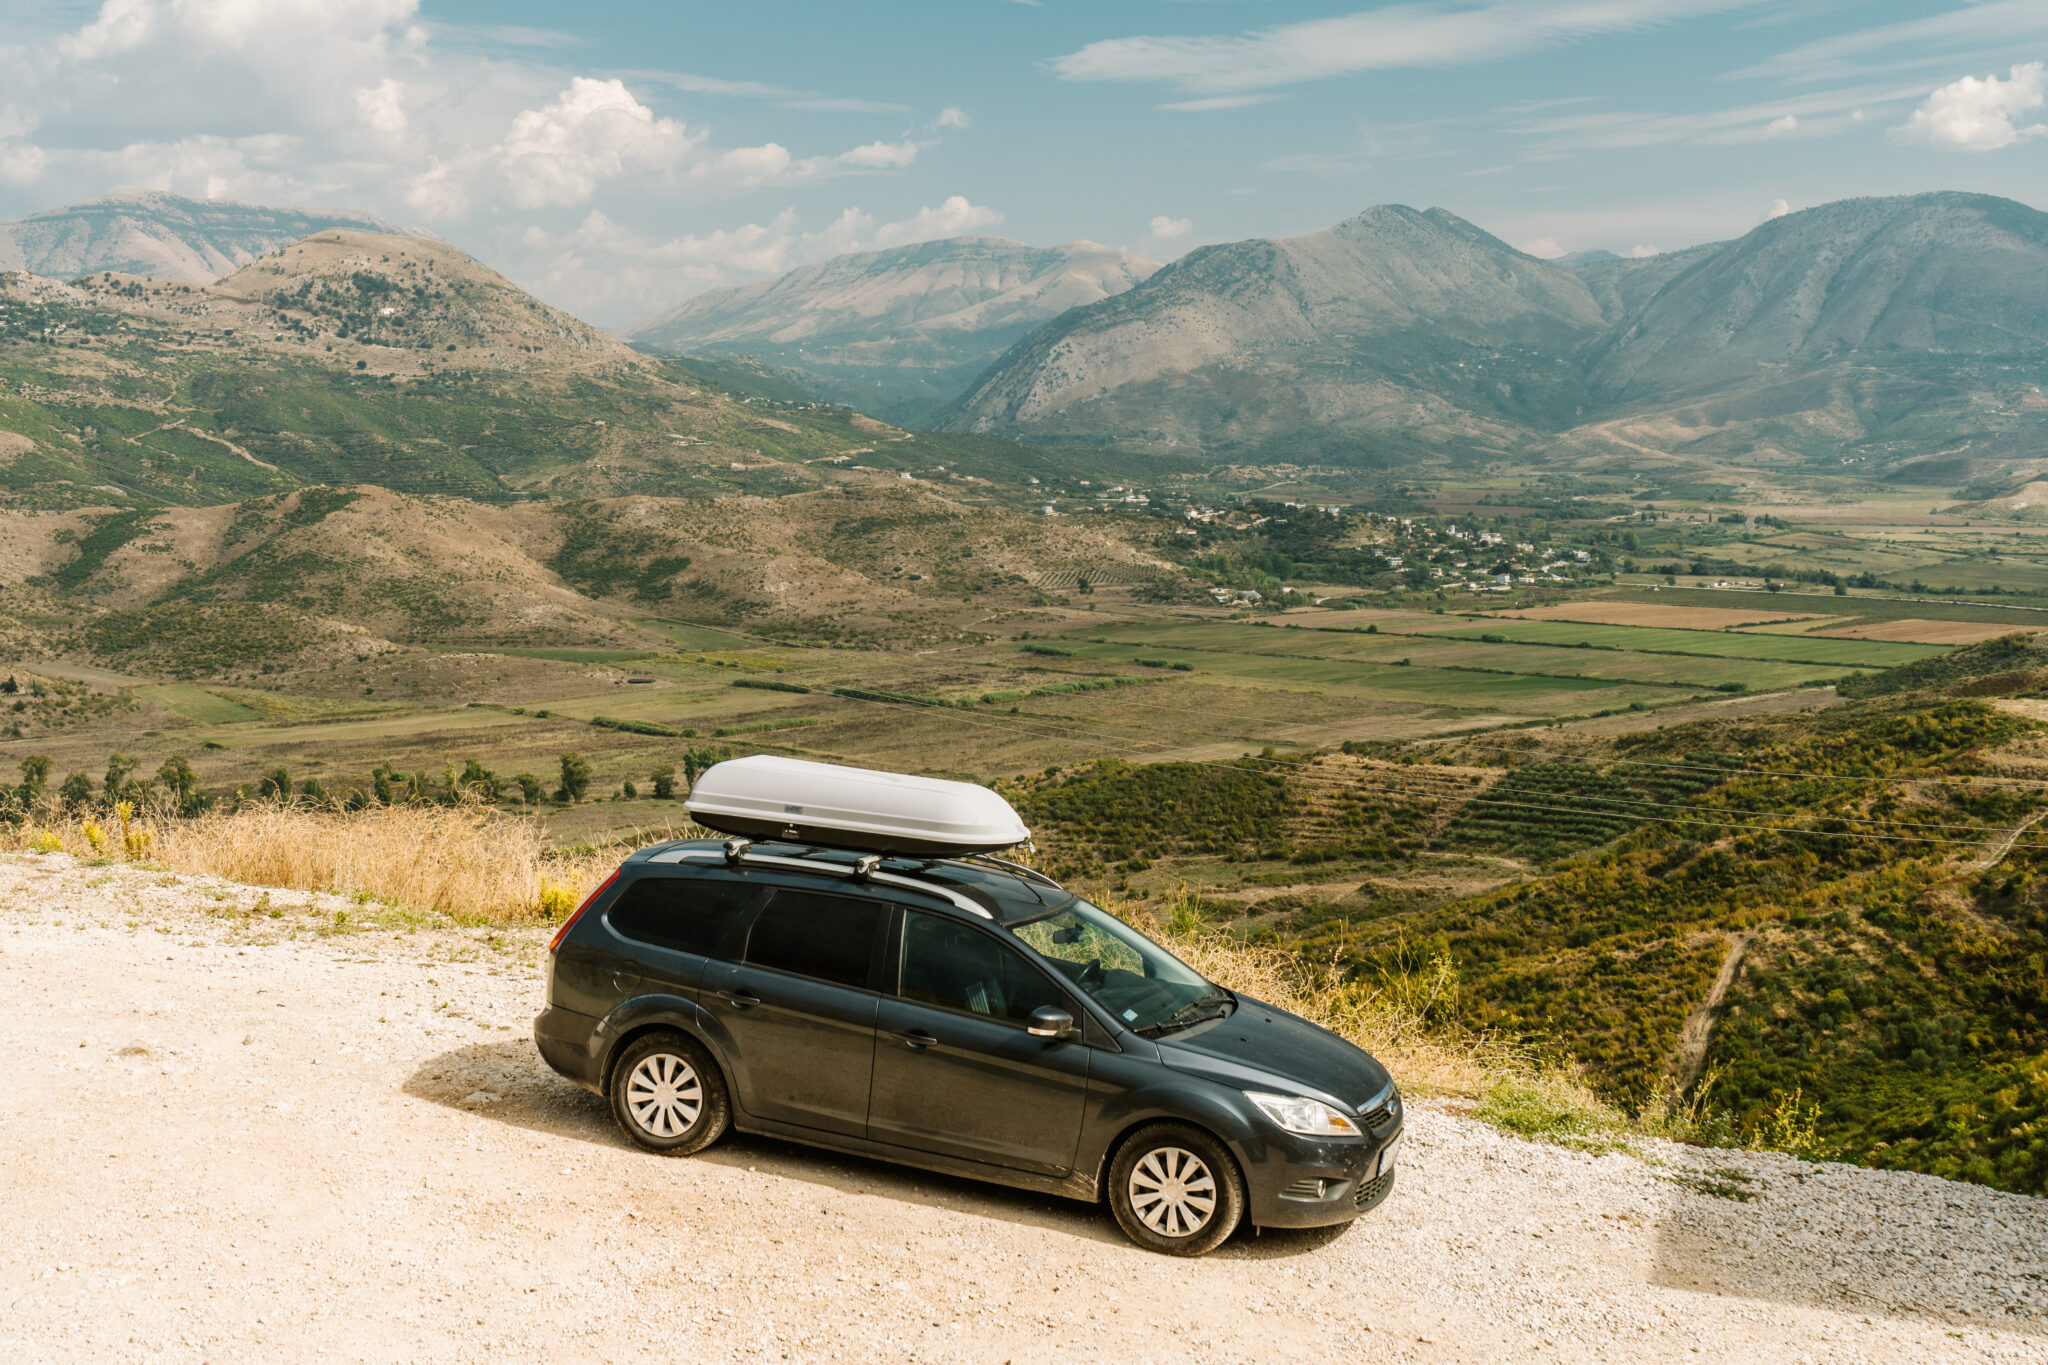 Wypożyczenie samochodu w Albanii - fotelik dla dziecka, ubezpieczenie i porady